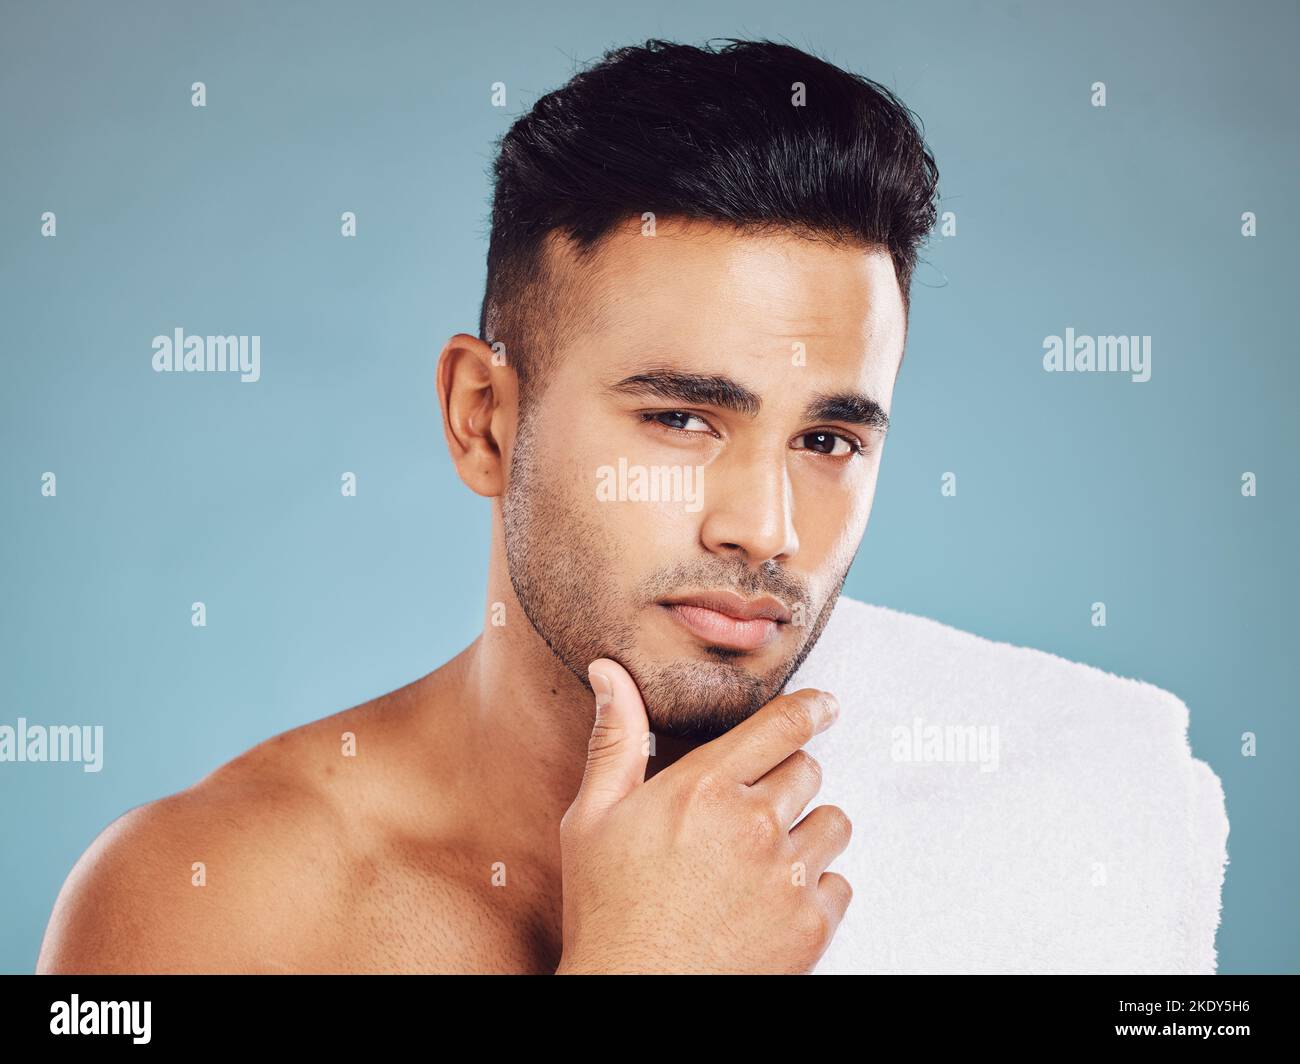 Mann, Hand auf Gesicht und Hautpflege Reinigung oder Pflege Kosmetik Porträt im Studio. Junge indische Modell, gesunde Gesichtspflege und Körperhaut Entgiftung oder Stockfoto